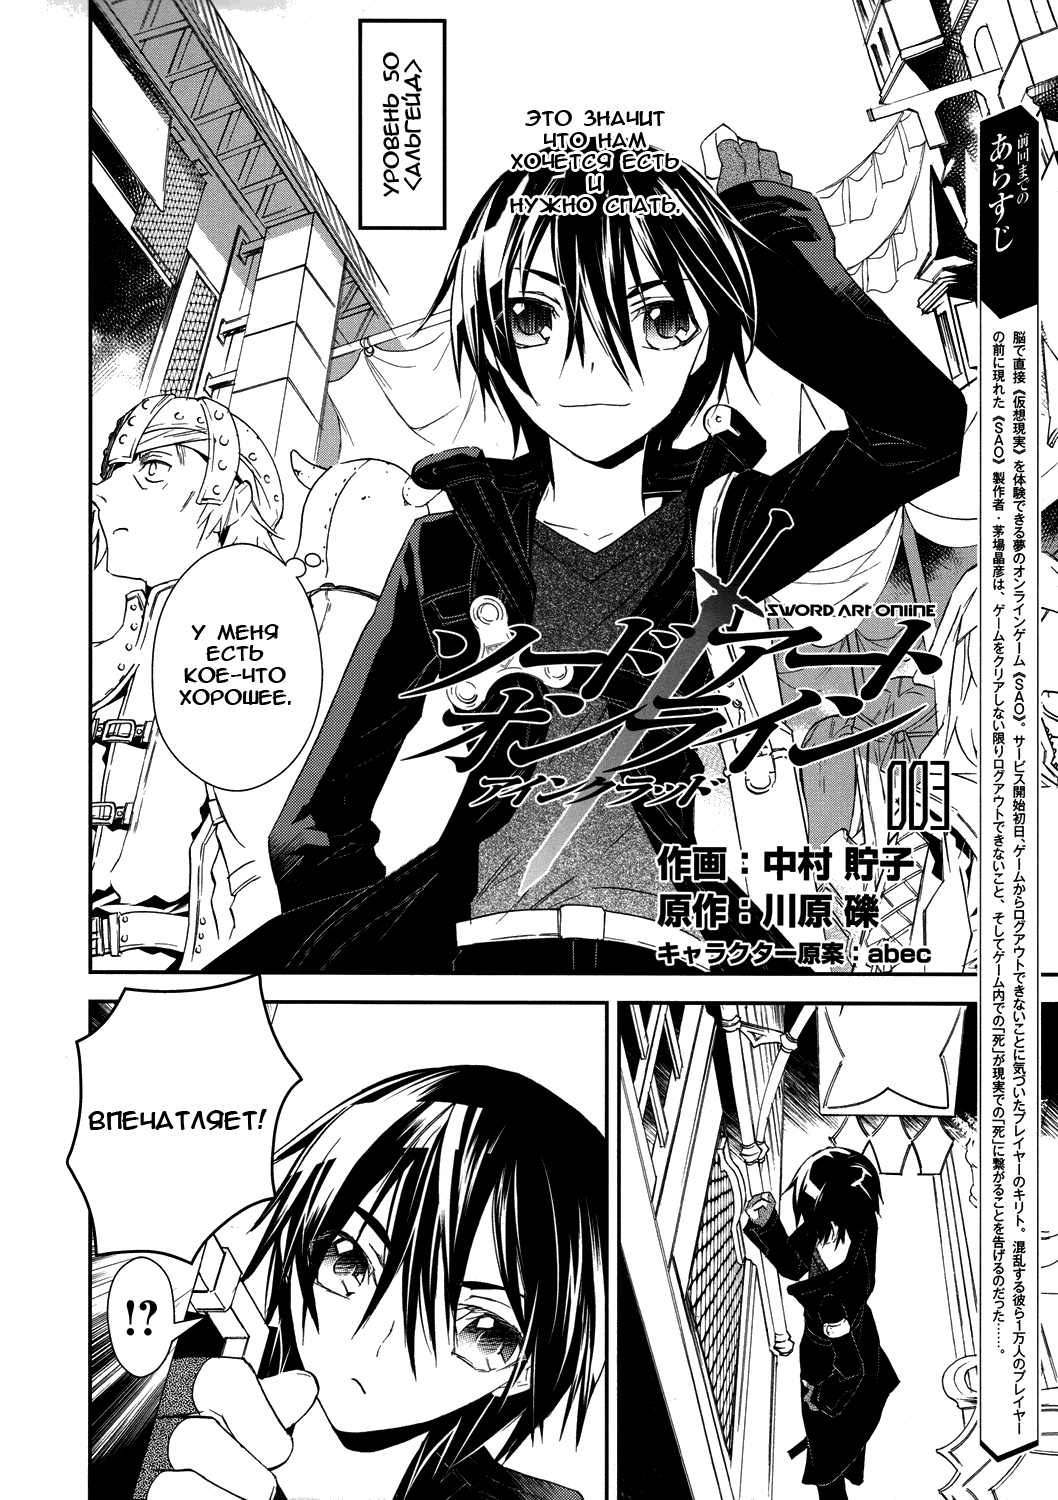 Sword Art Online 16.5 Manga